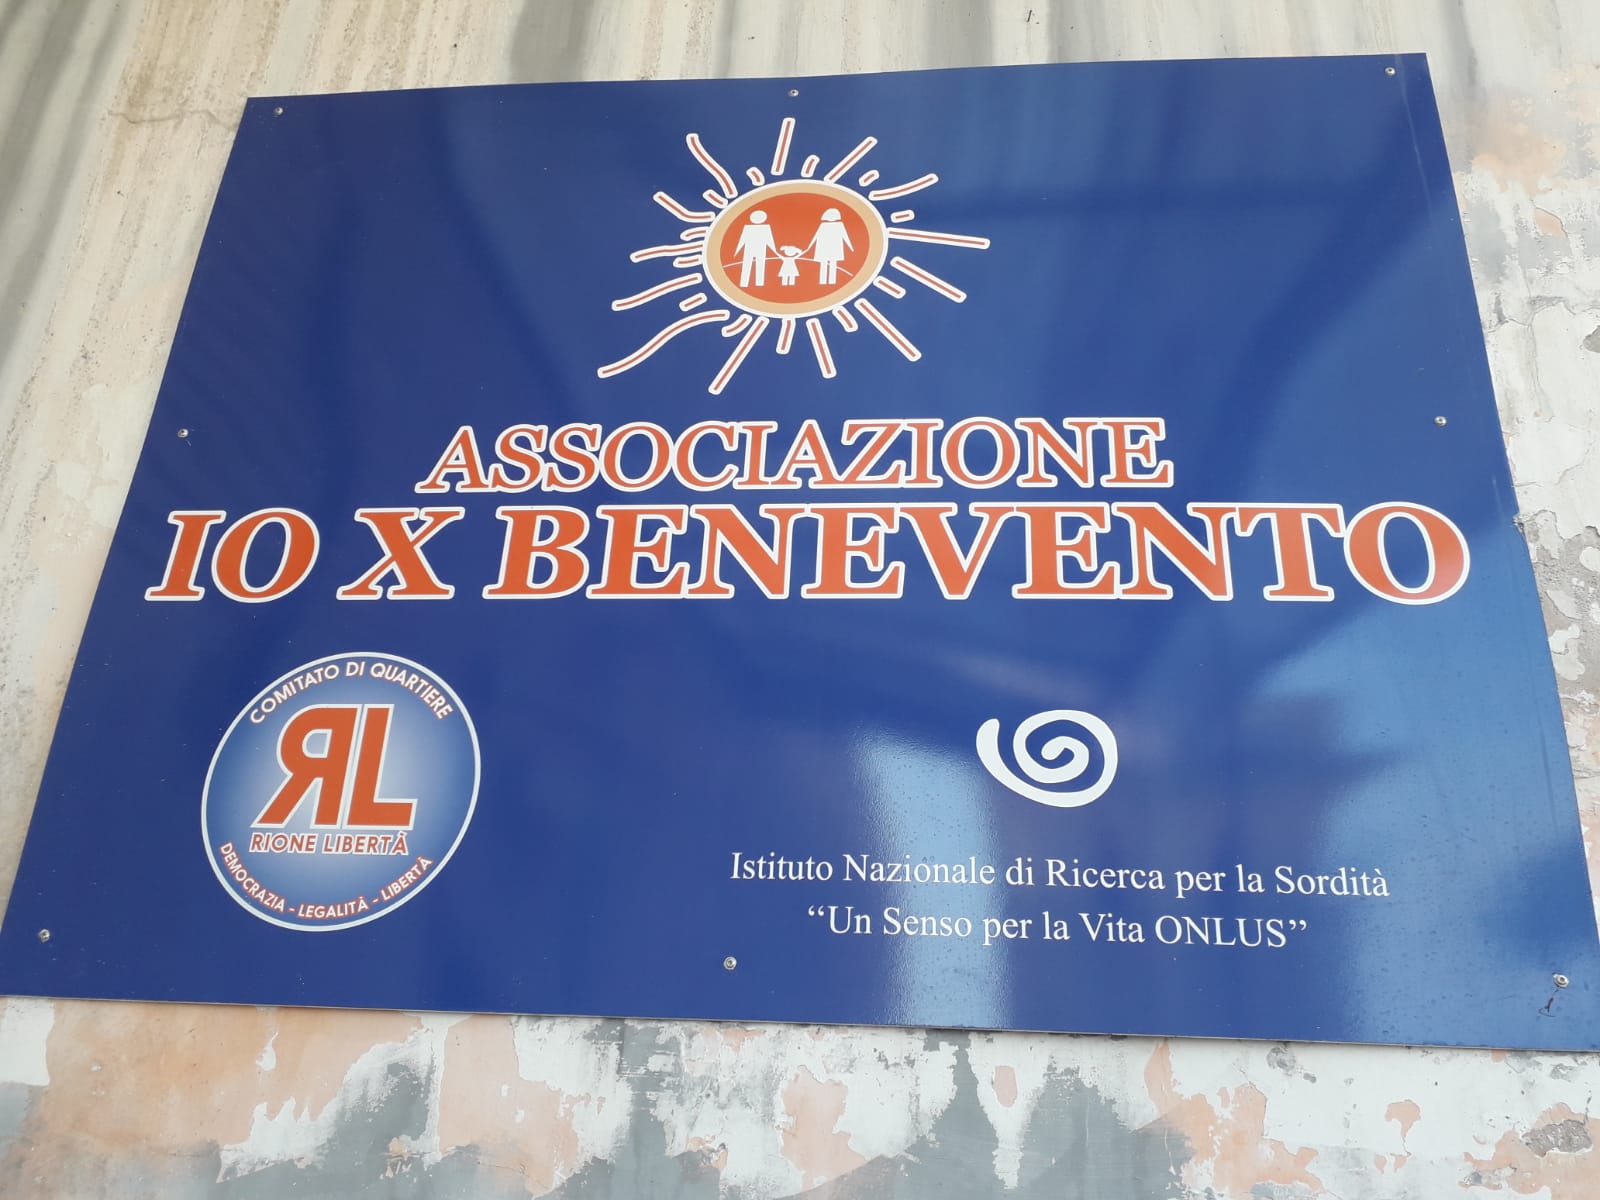 Benevento| Fissalappuntamento, conferenza stampa con l’Asl nella sede di IoXBenevento